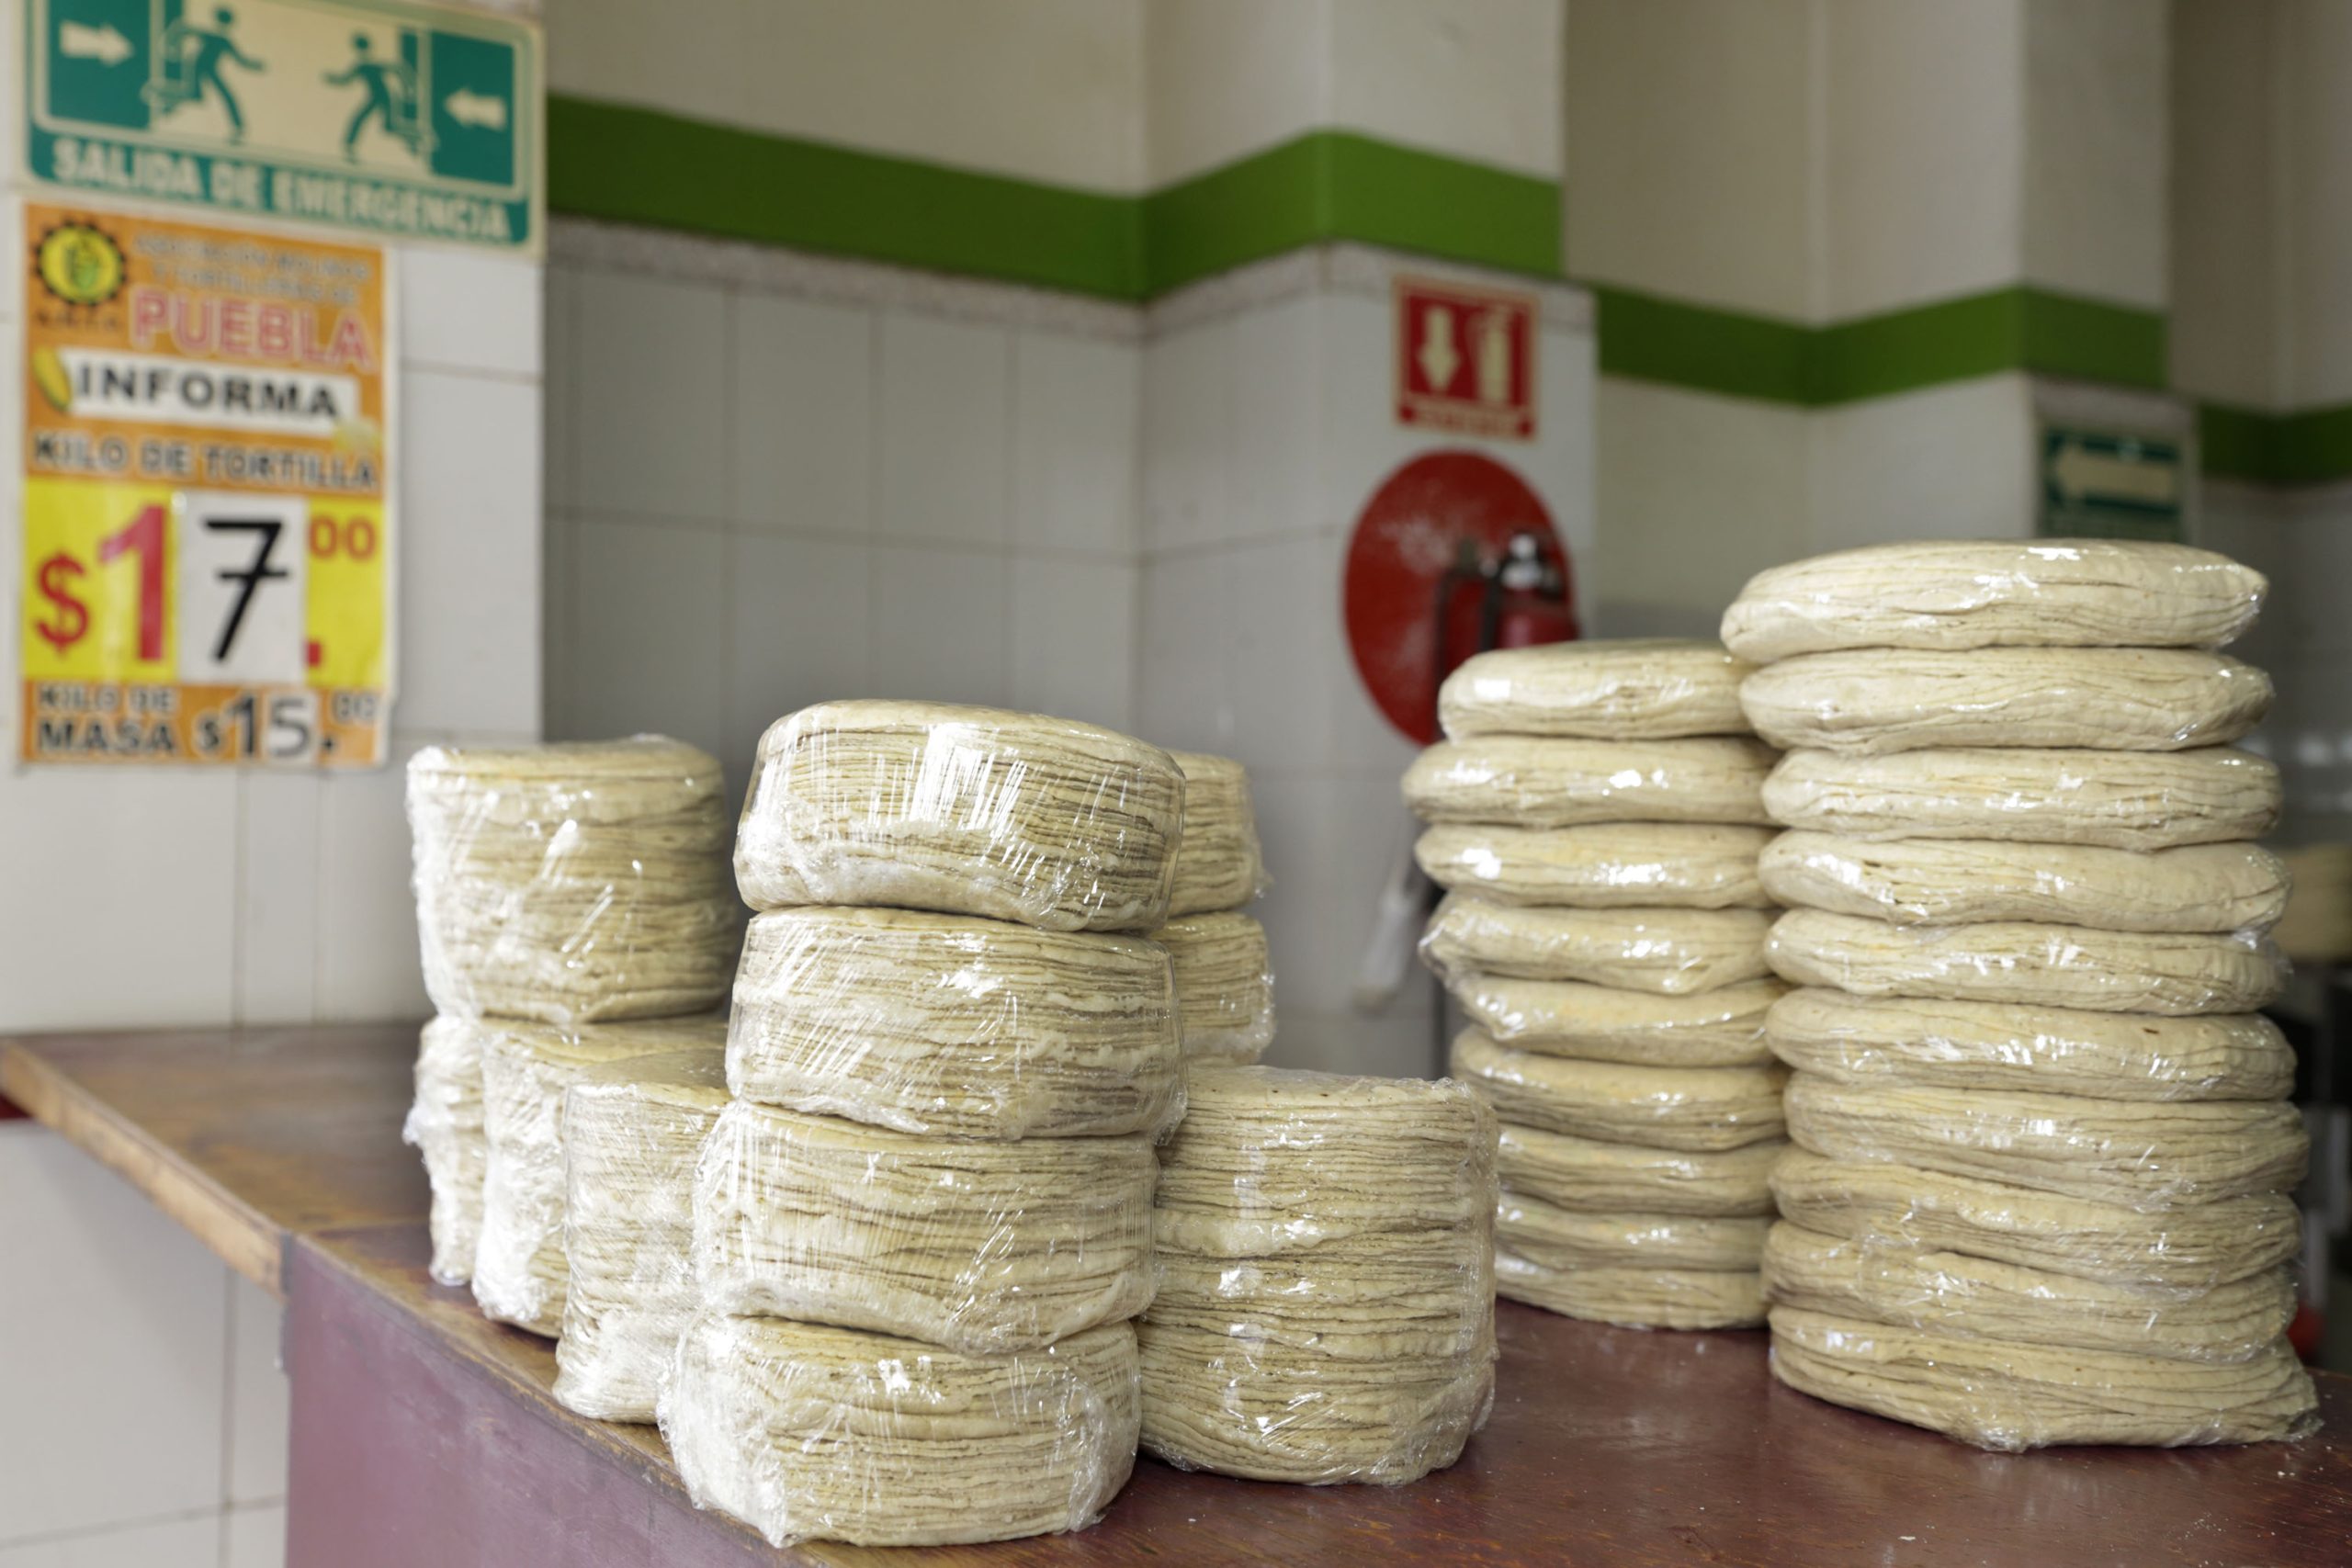 ¿Sabes cuánto cuesta el kilo de tortillas en Puebla?